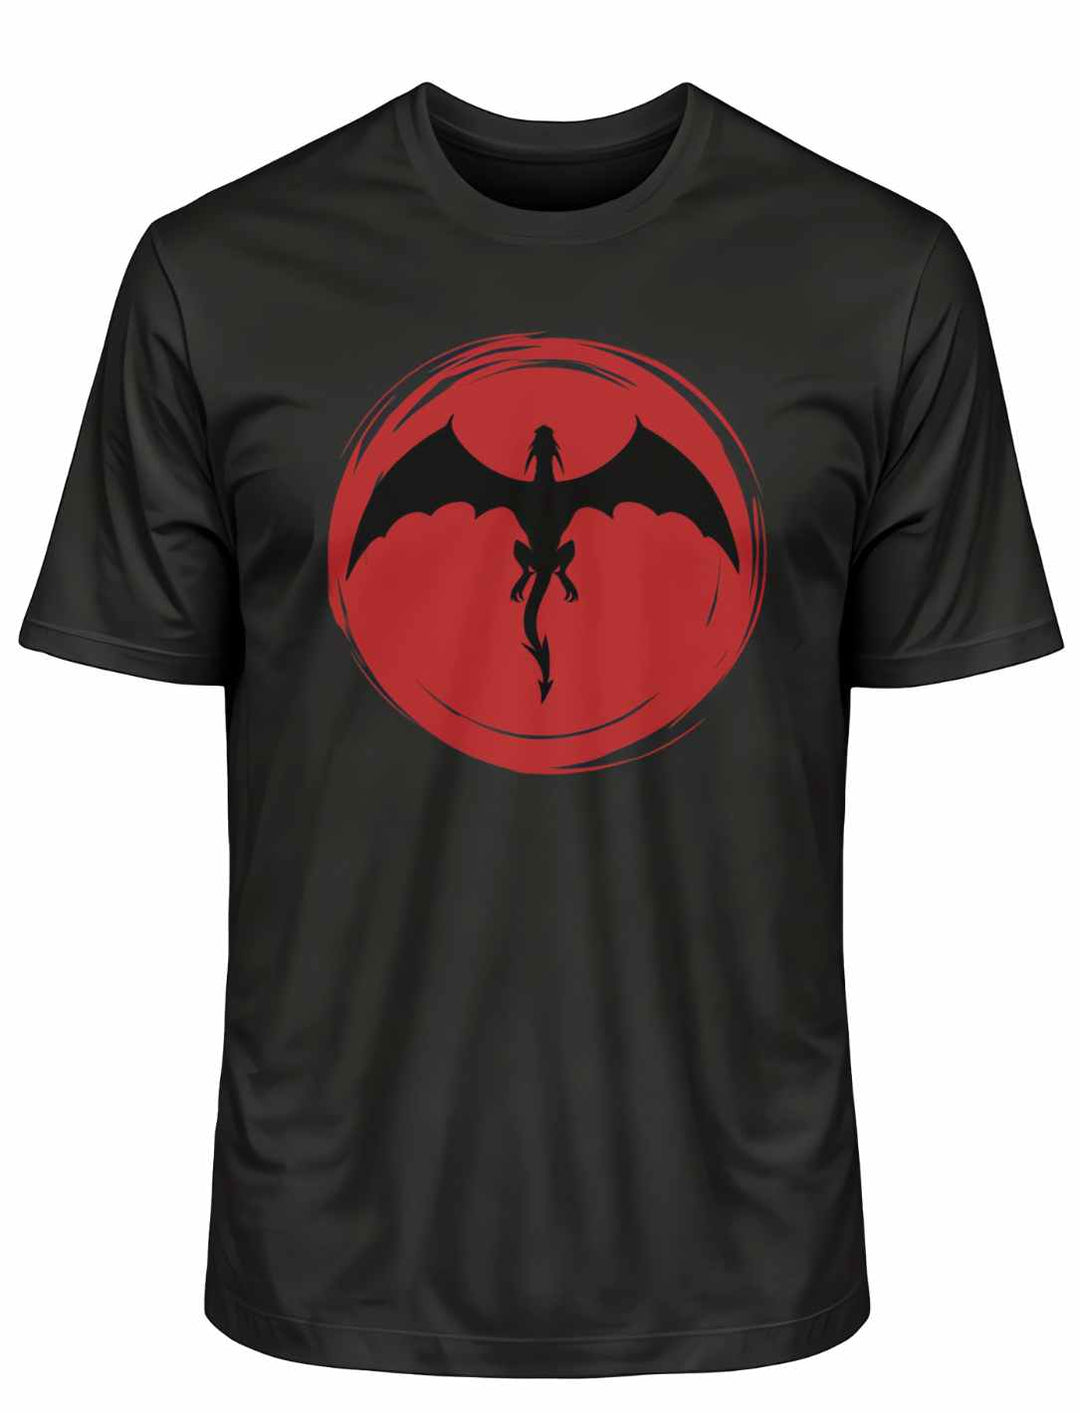 Schwarzes 'Saga of the Dragon' Organic Unisex T-Shirt flach ausgelegt auf weißem Hintergrund, betont das kontrastreiche Drachen-Design.